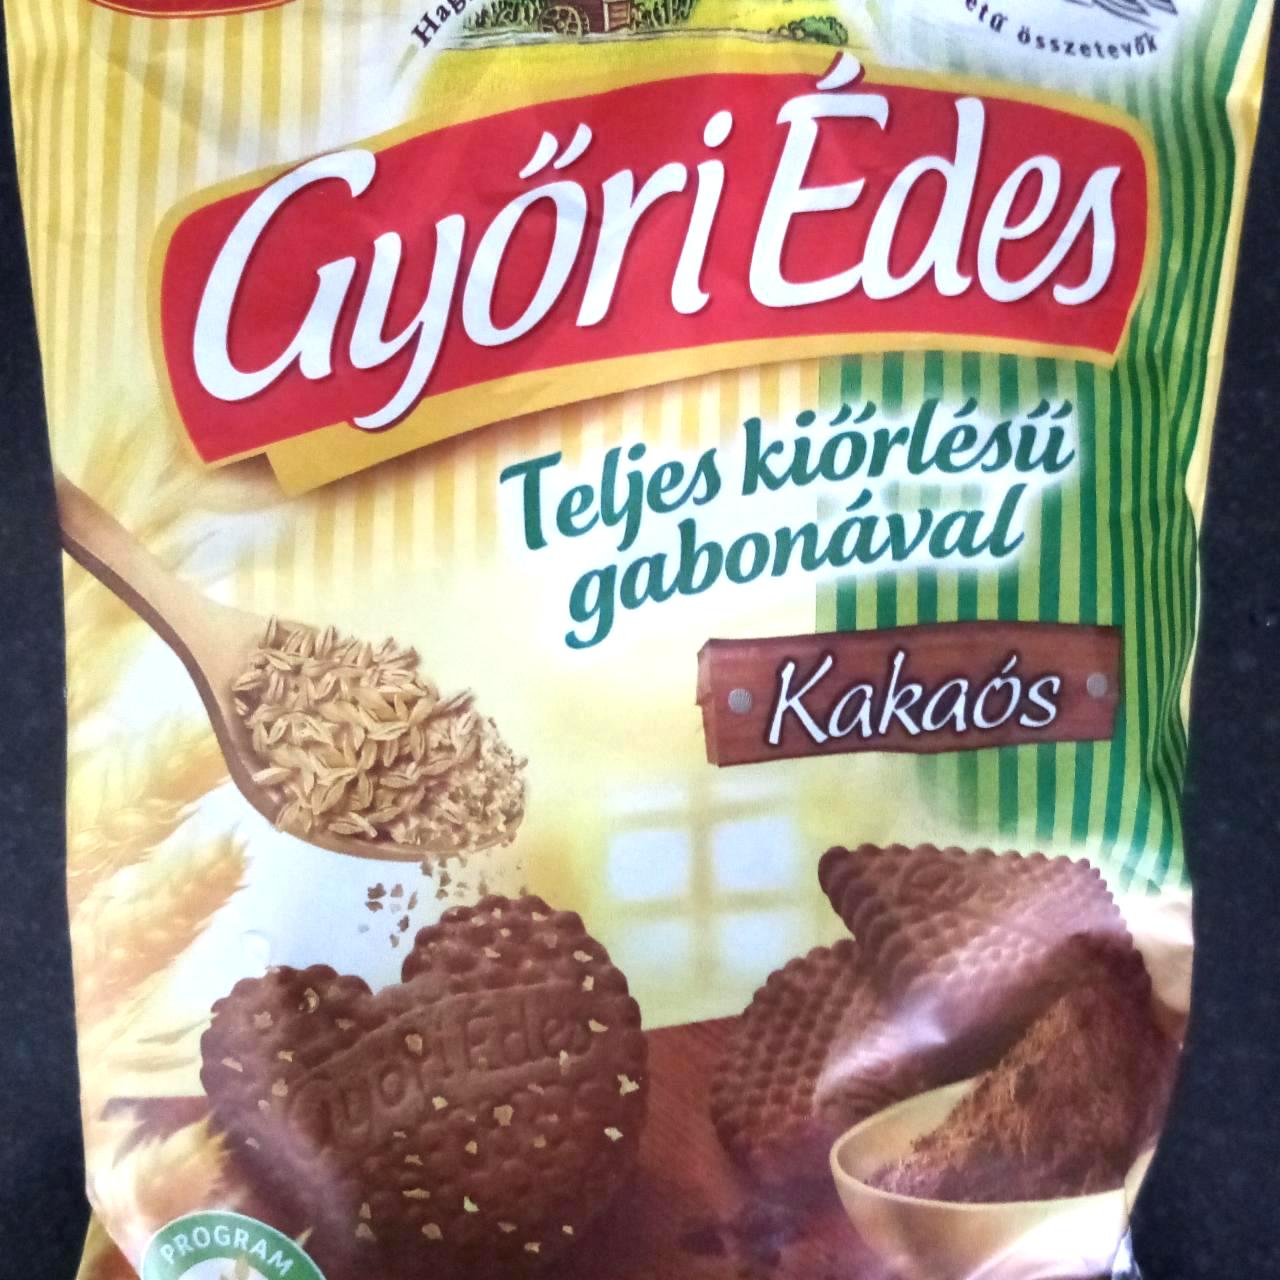 Képek - Győri Édes Teljes kiőrlésű gabonával - kakaós